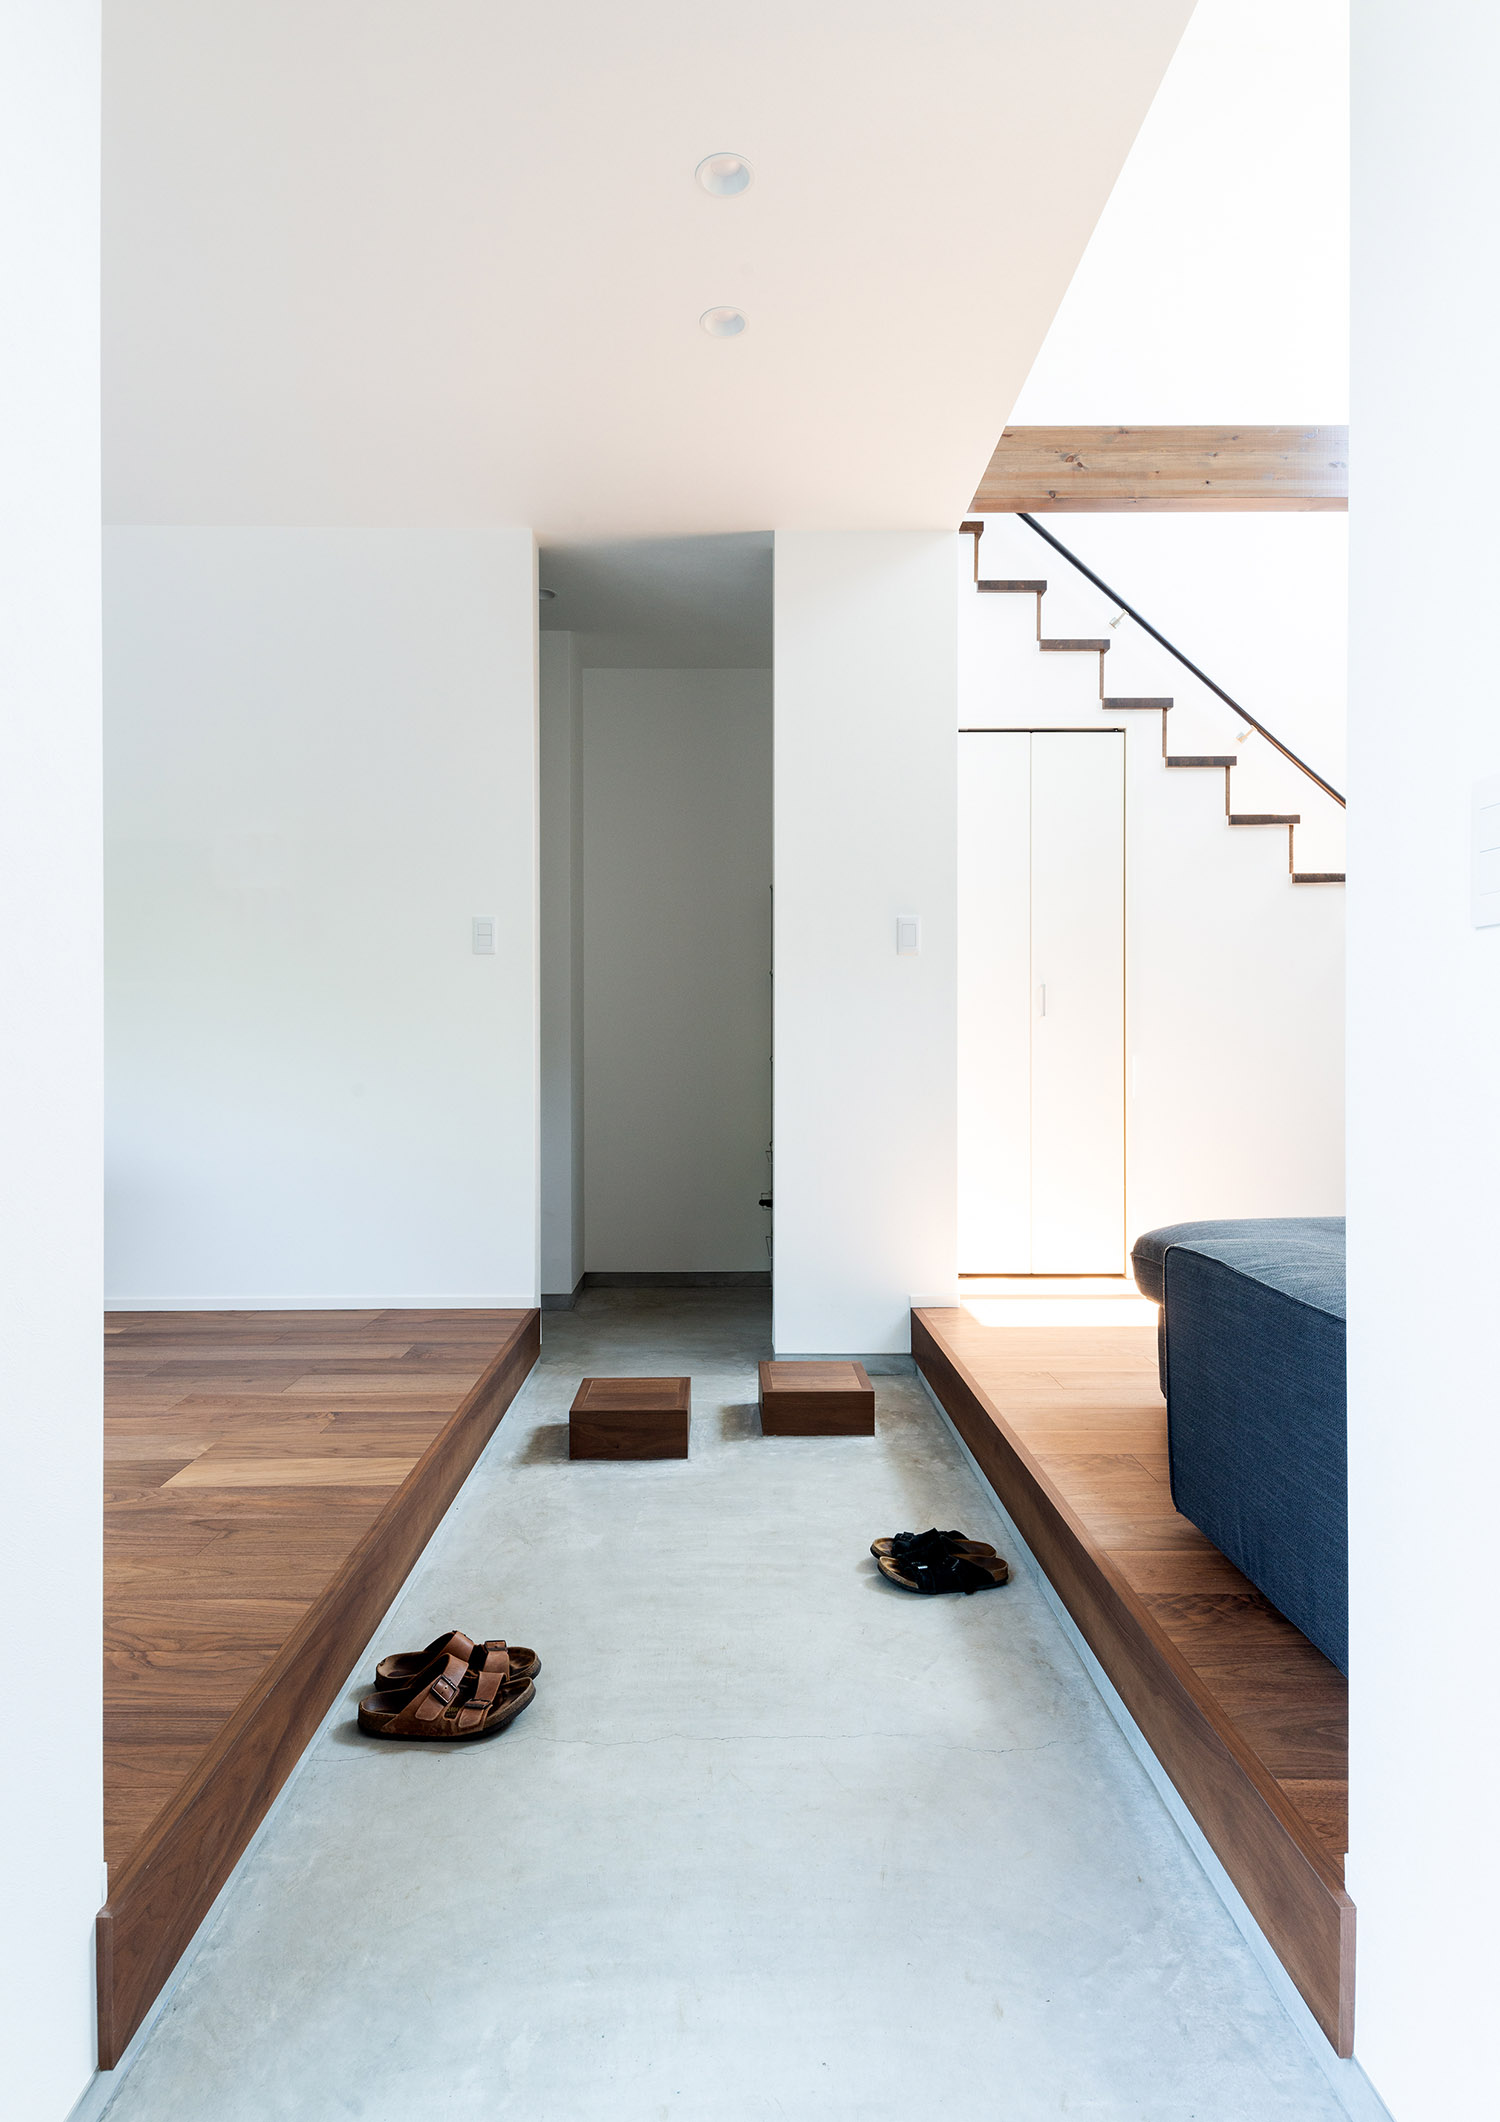 部屋と部屋を繋ぐシンプルな土間玄関・デザイン住宅